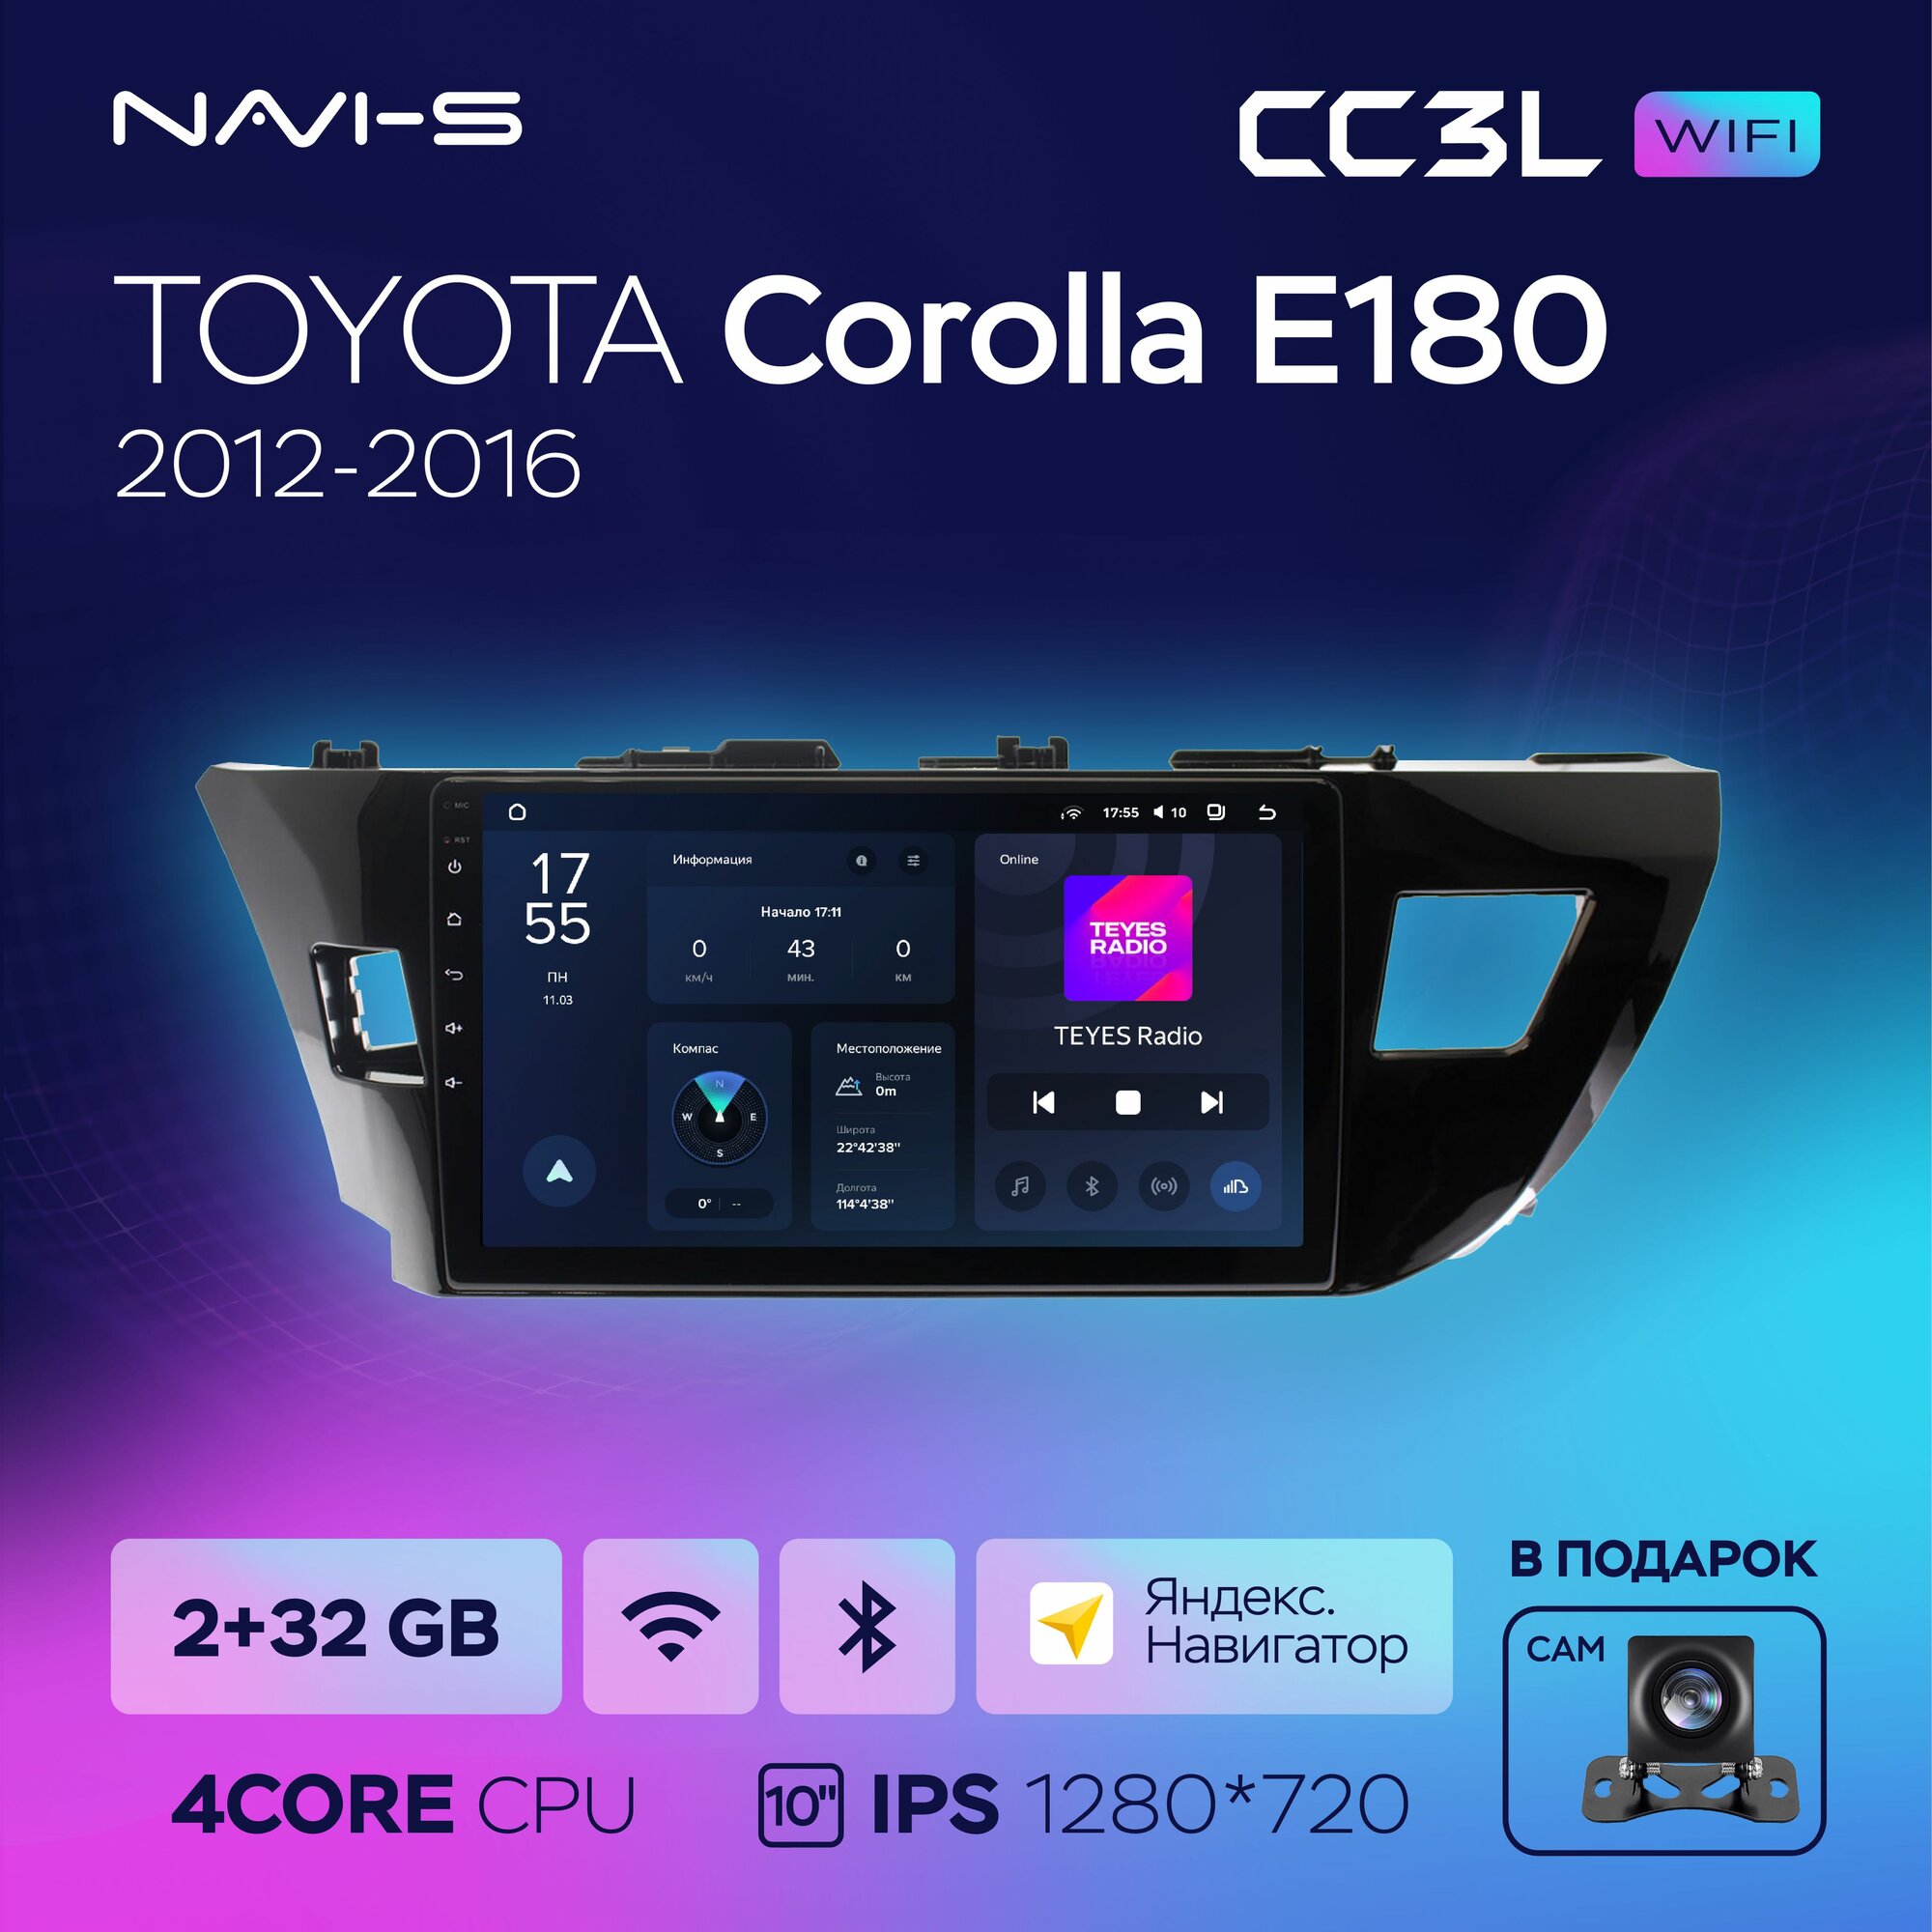 Автомагнитола Teyes CC3L Wi-Fi 2/32GB для Toyota Corolla E180 (Тойота Королла Е180) 2012 - 2016 10 дюймов